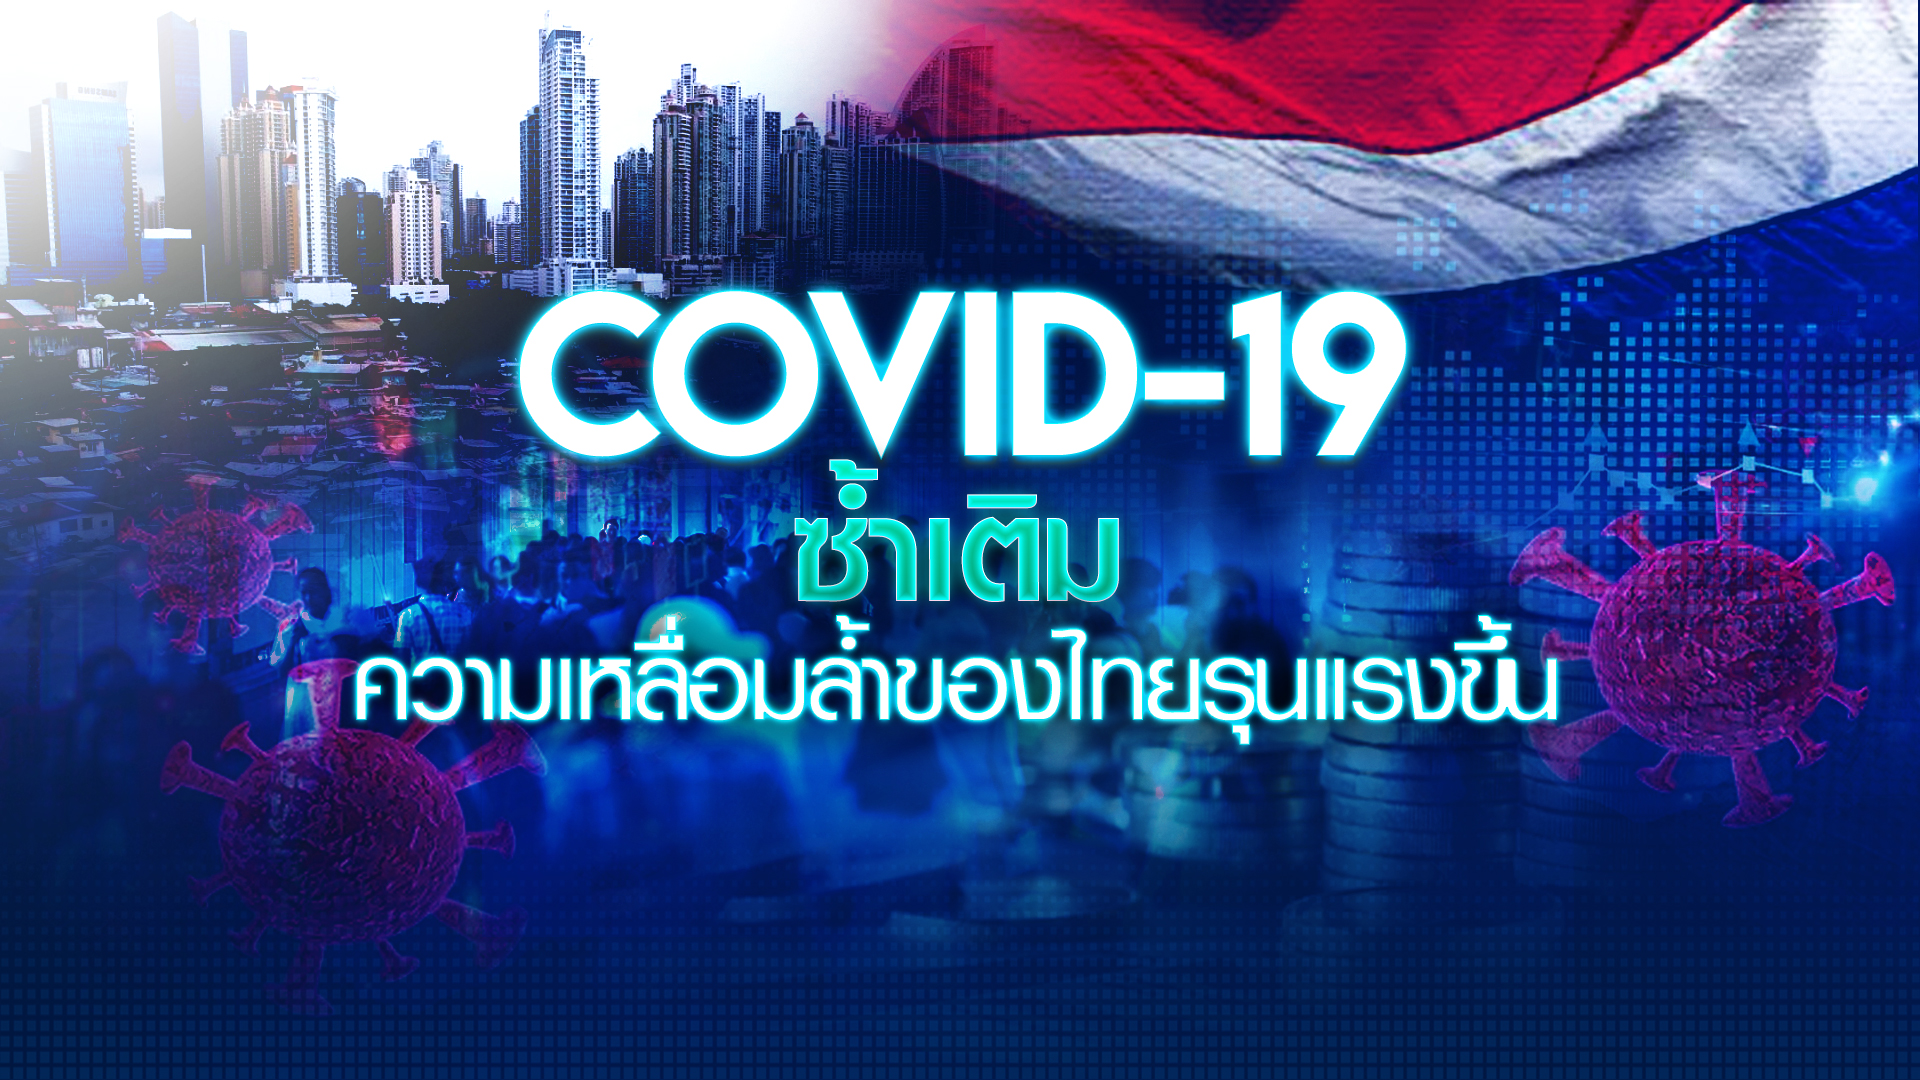 COVID-19 ซ้ำเติม ความเหลื่อมล้ำของไทยรุนแรงขึ้น